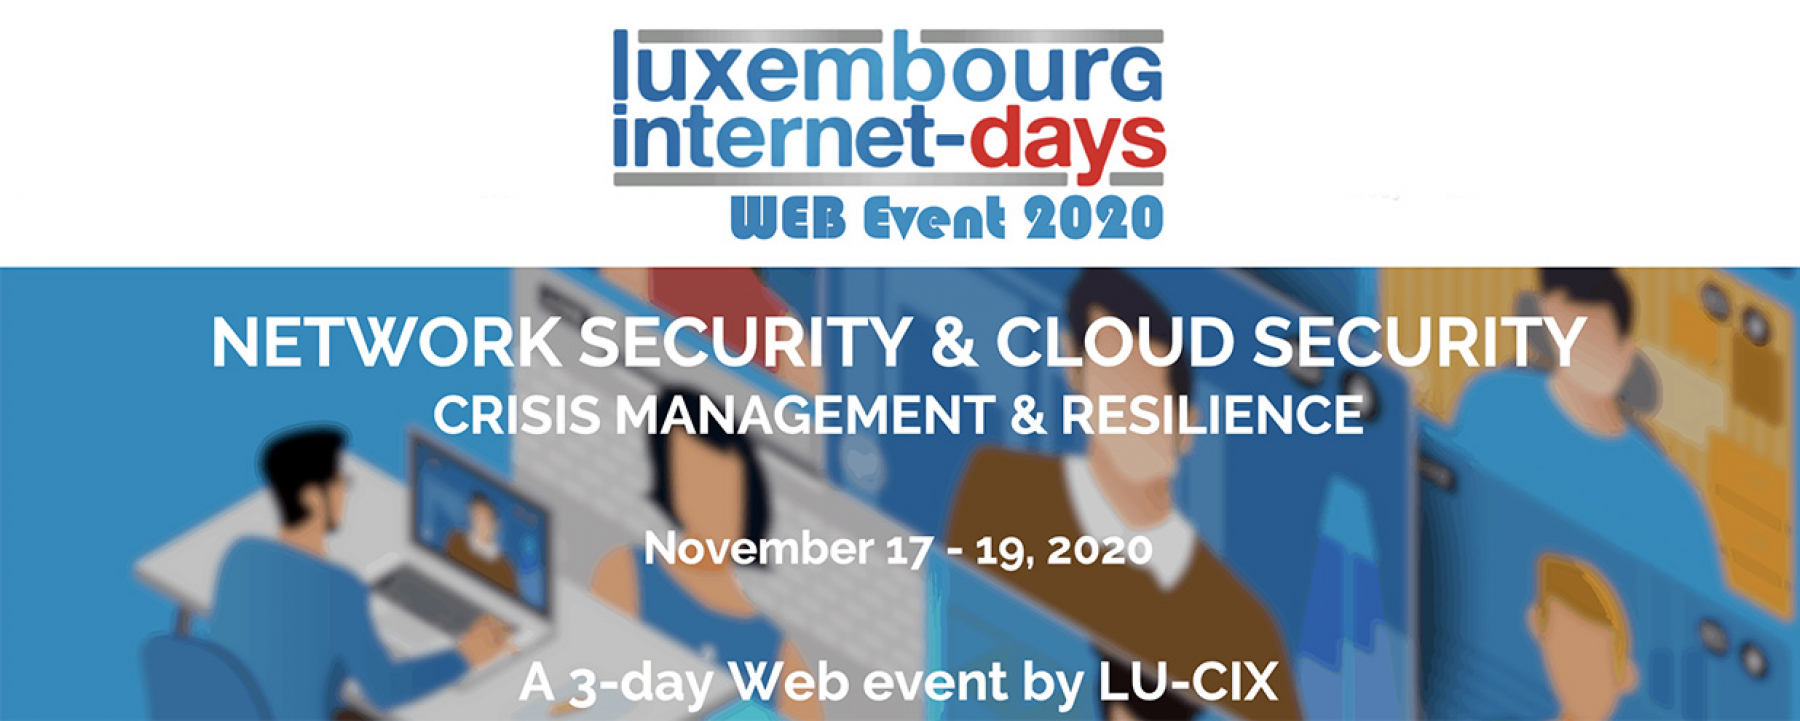 Luxembourg Internet Days, un événement en ligne organisé par LU-CIX du 17 au 19 novembre